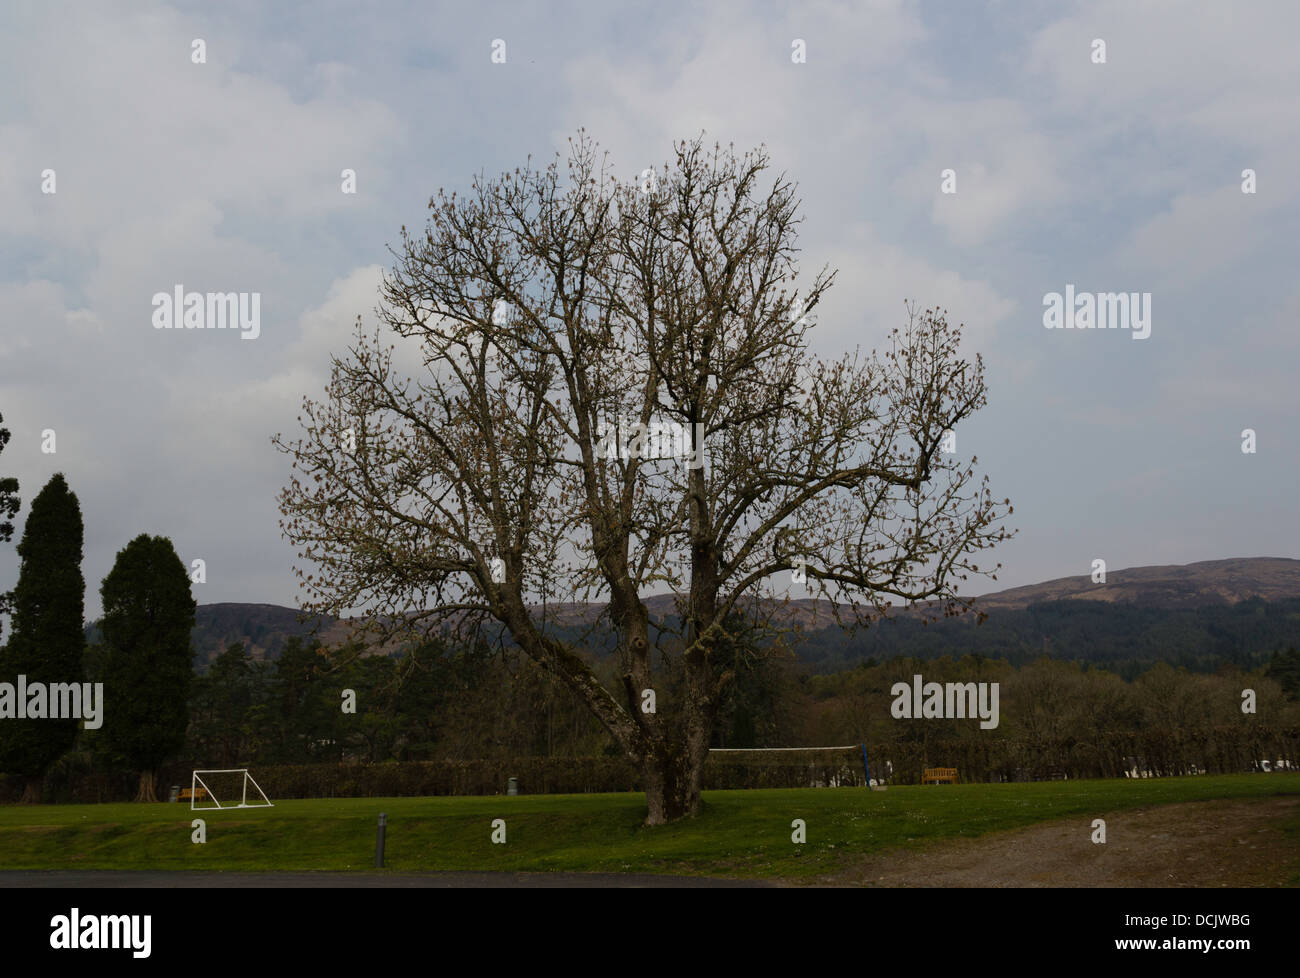 Einen alten Baum in der Mitte ein Garten und ein Spielplatz in eine Rasenfläche mit einem Spielfeld, Netze und weiße Wolken im Himmel Stockfoto